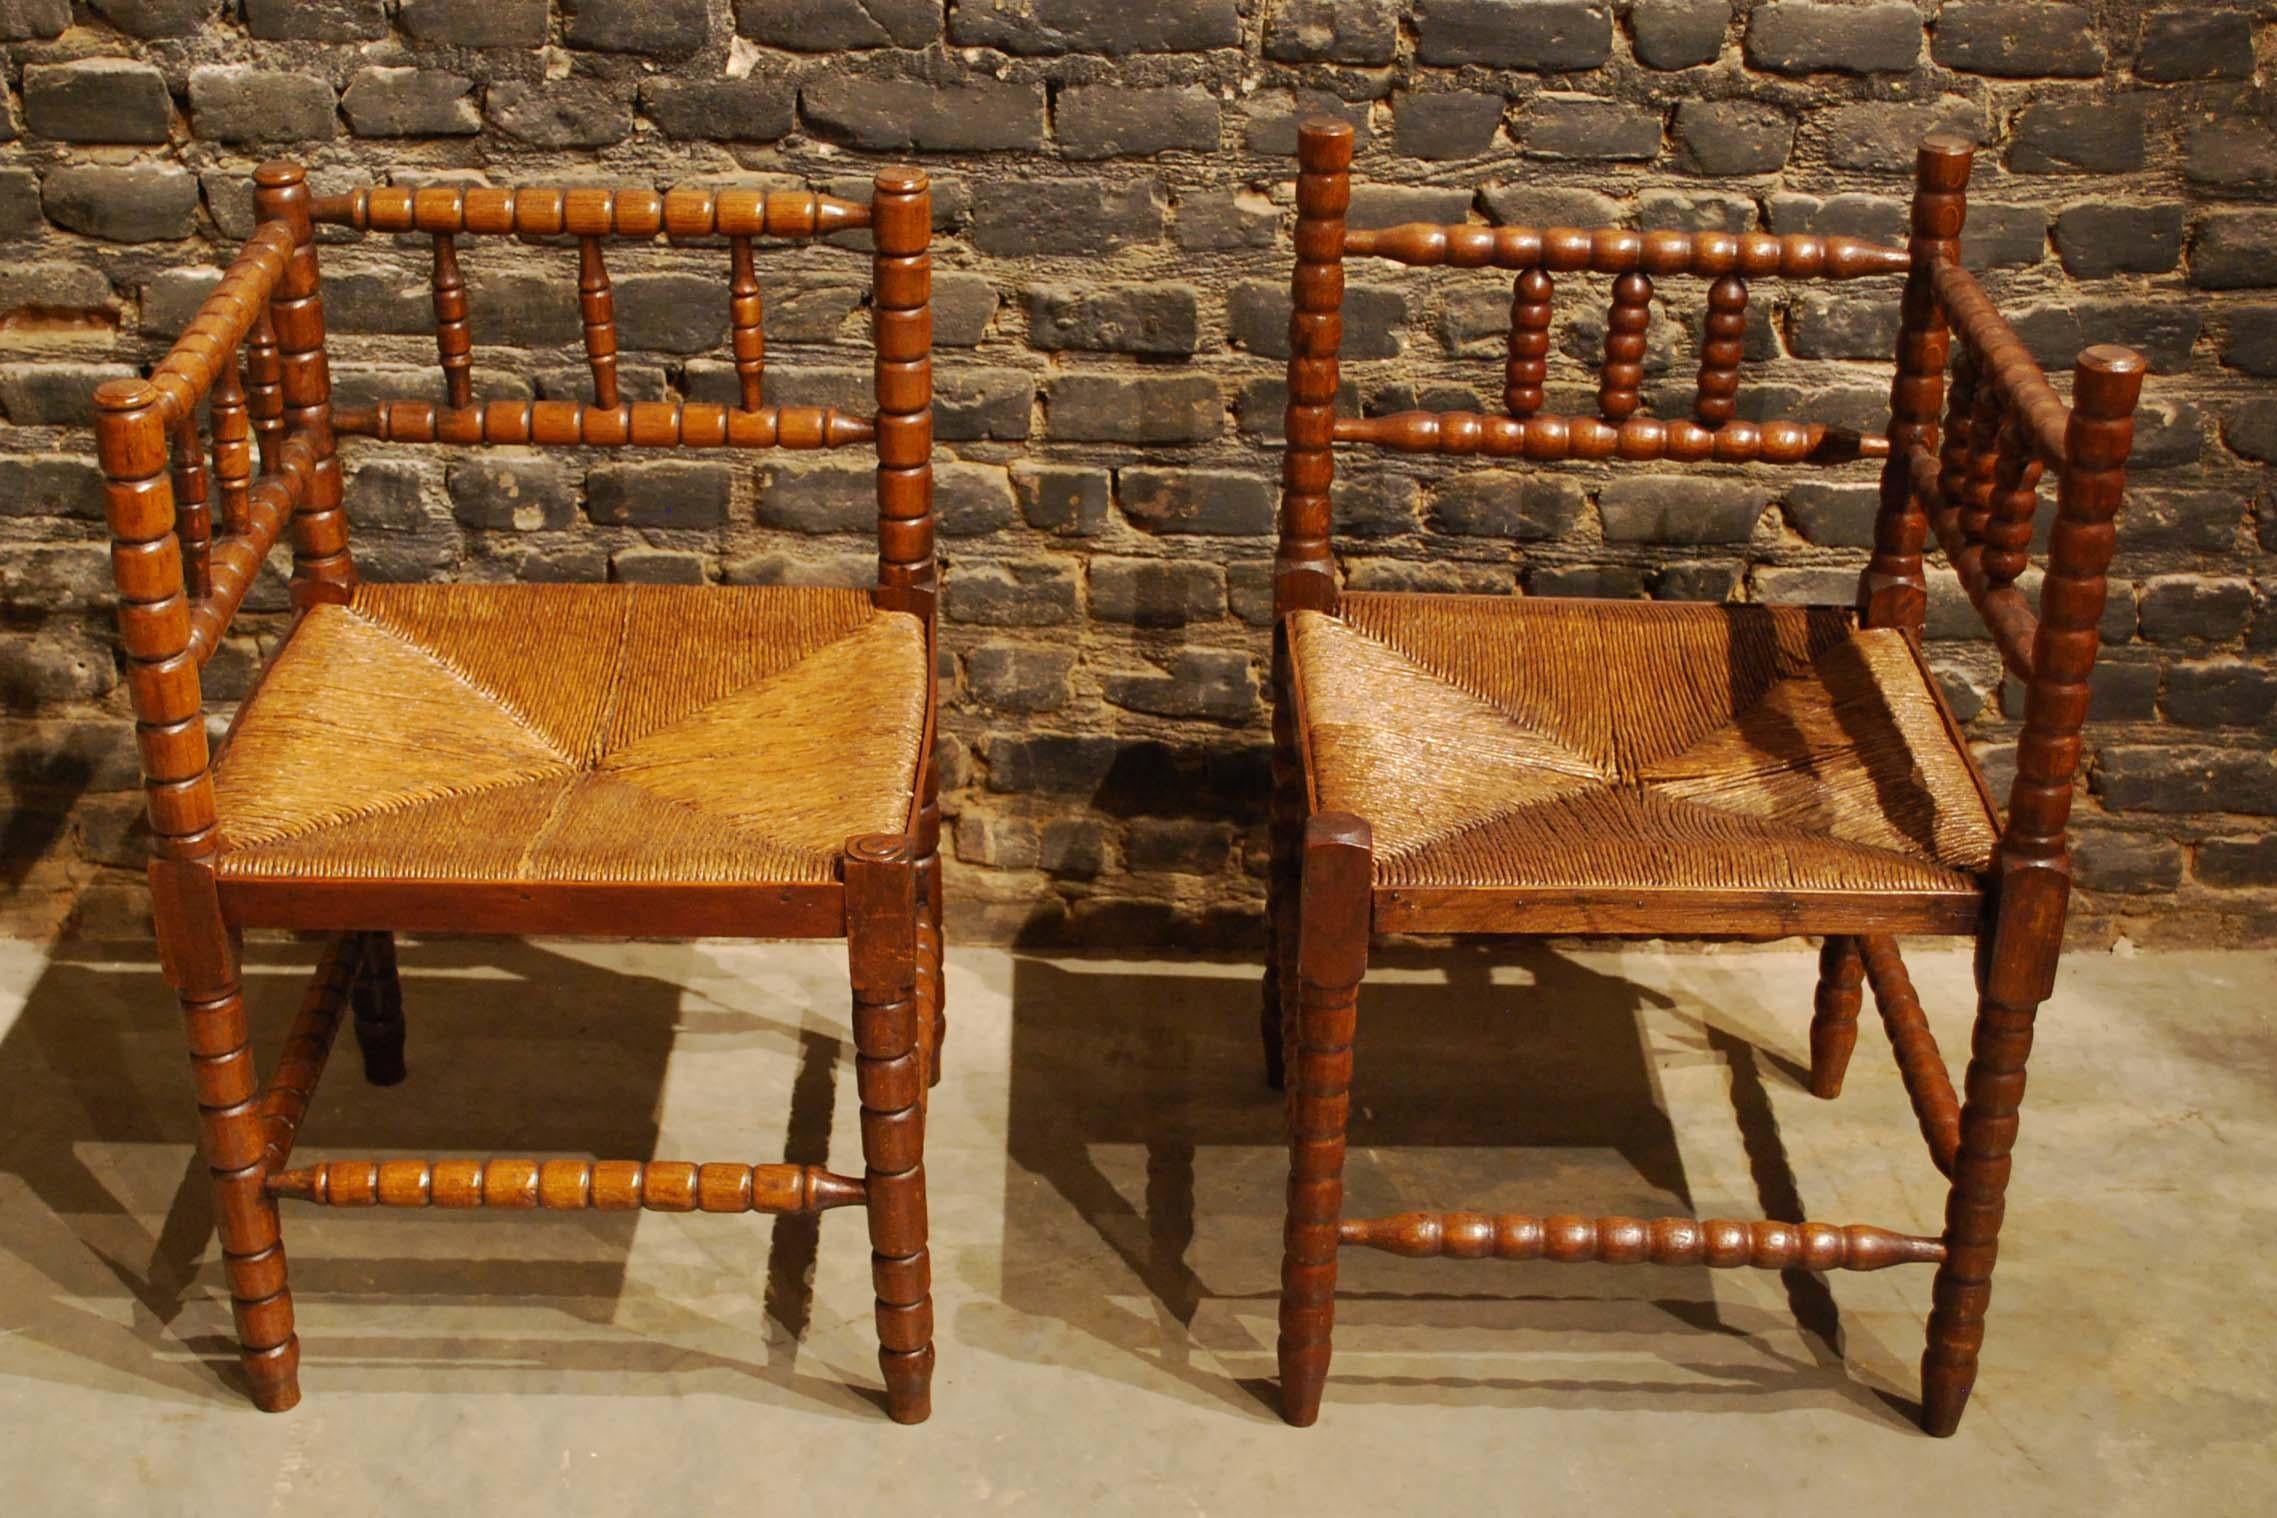 Eine schöne Sitzgruppe aus zwei Eckstühlen. 
Die Stühle wurden aus massivem Buchenholz mit originalen Binsensitzen gefertigt. Dieser rustikale Satz antiker Stühle mit doppelter Zarge und klassisch gedrechselten Beinen und Querstützen ist etwas